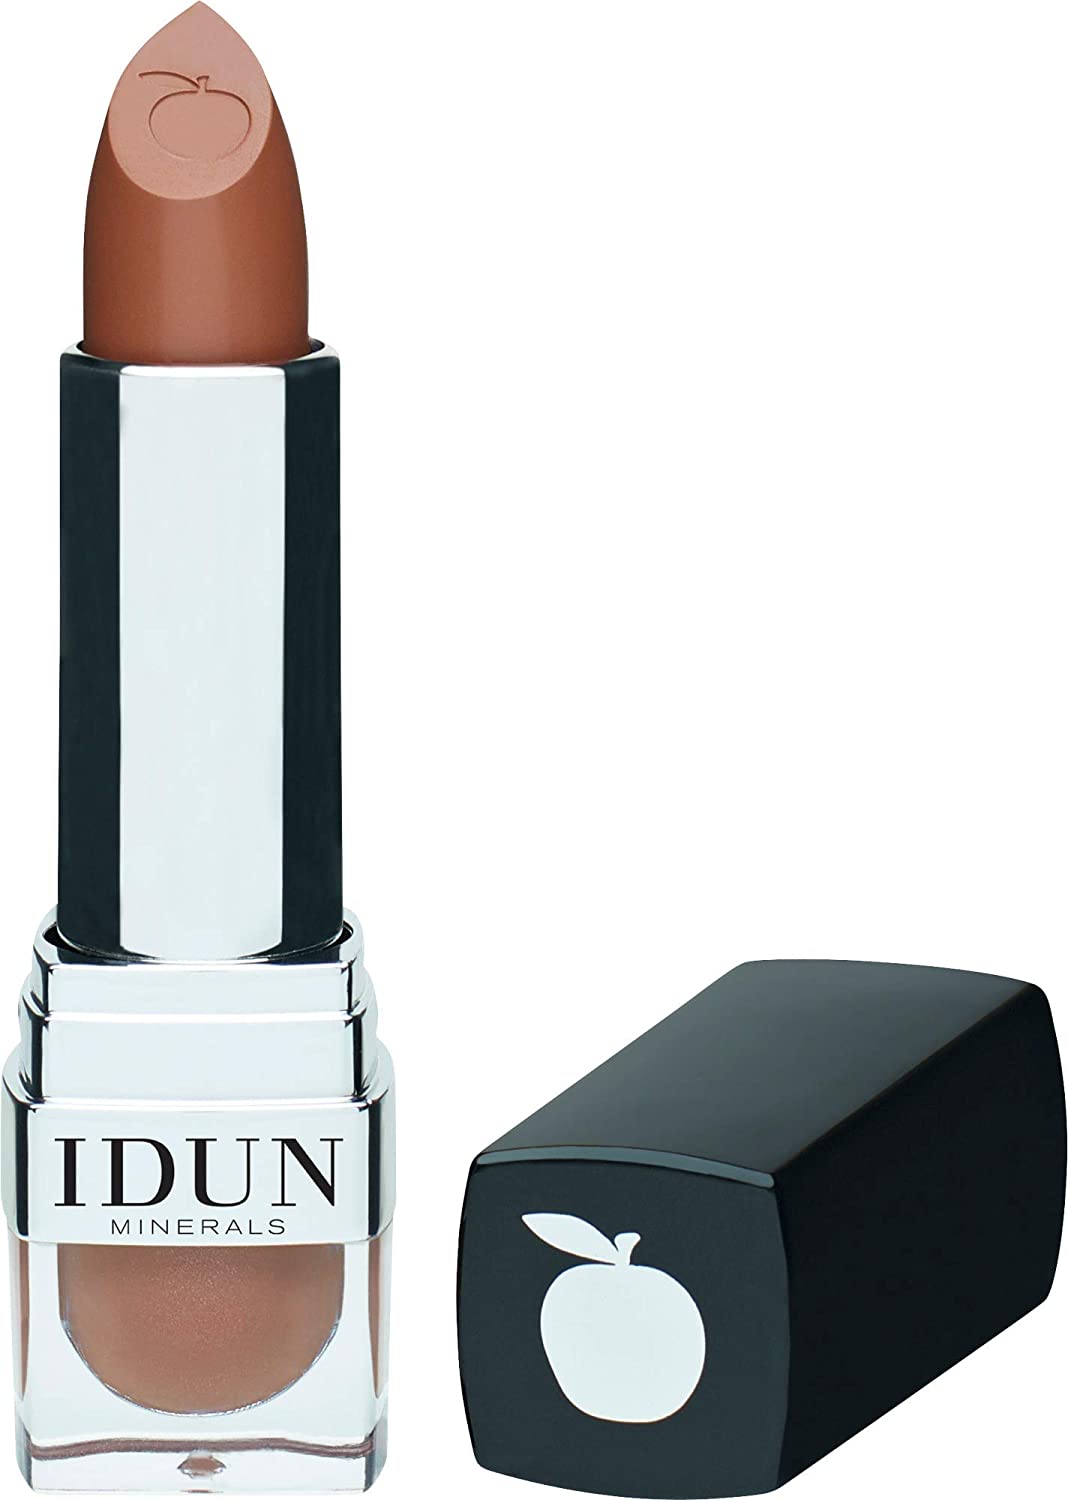 Idun Minerals Matte Lipstick - 108 Krusbar For Women 0.14 Oz Lipstick